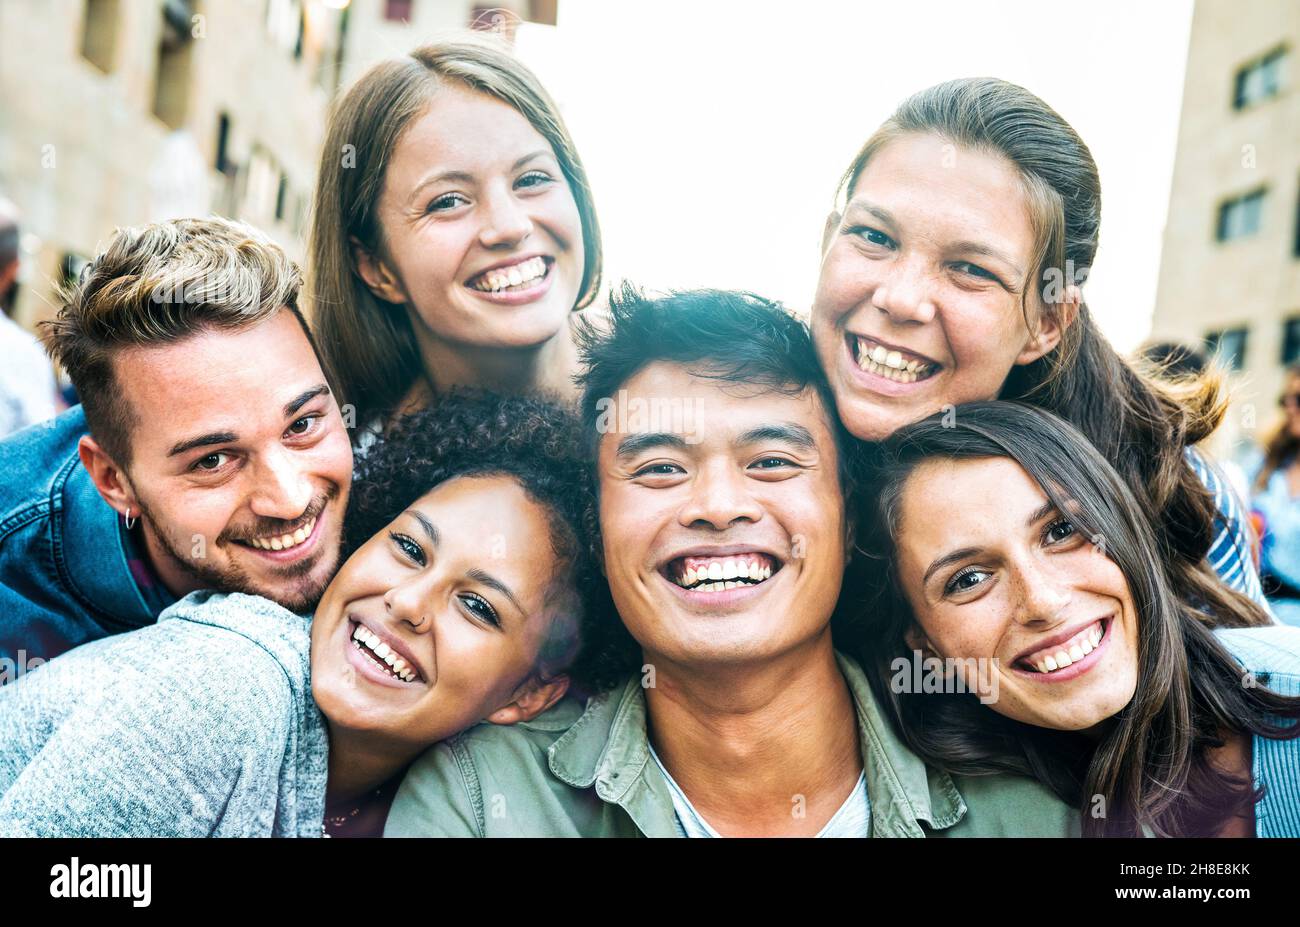 Multikulturelle Männer und Frauen, die Selfie mit Hintergrundbeleuchtung aufnehmen - Happy Milenial Life Style Konzept für junge multirassische Freunde, die einen lustigen Tag haben Stockfoto